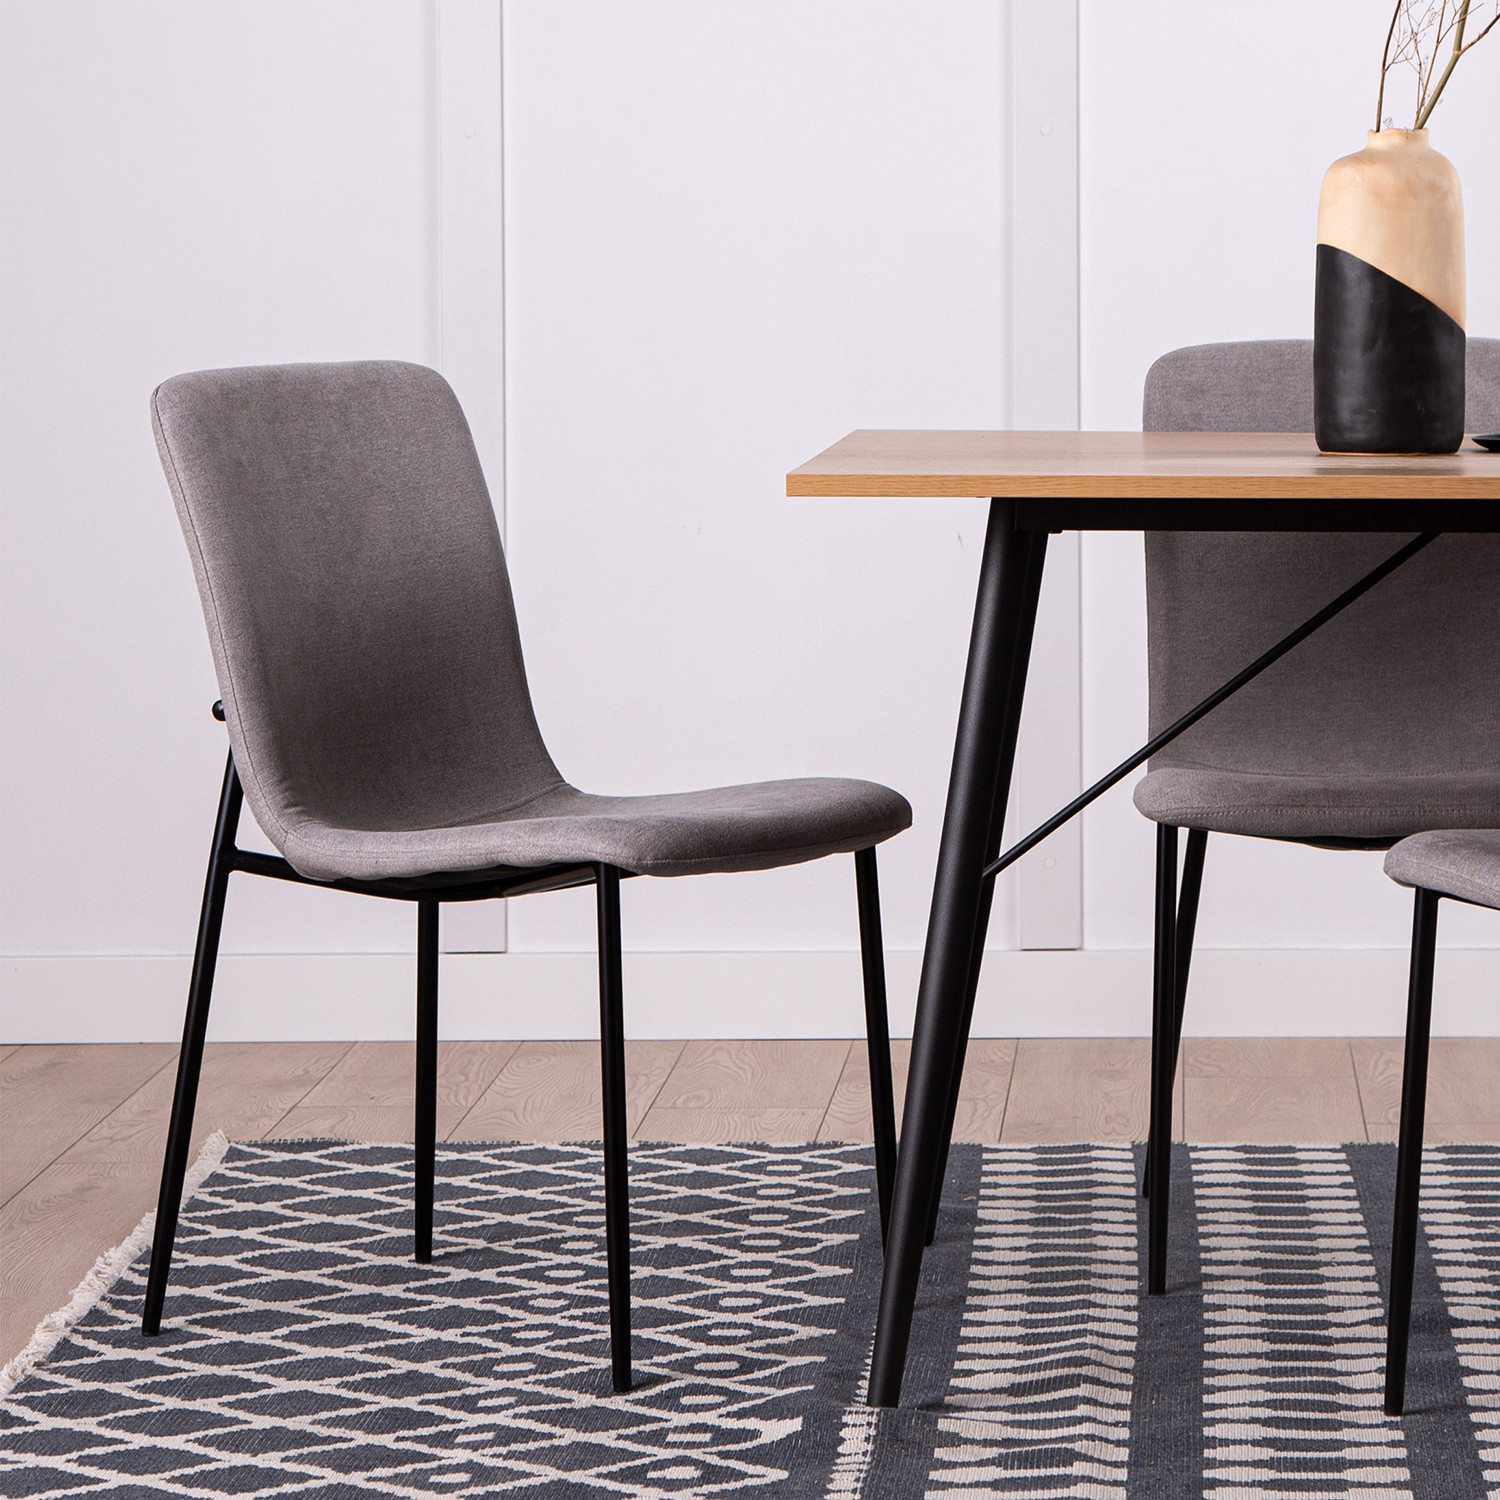 La silla de comedor Eryn en tapizado de poliéster se trata de una gran elección para aquellos que estén buscando un diseño sofisticado y funcional que pueda servir como silla de comedor o de escritorio. Sus patas metálicas negras junto con sus 4 diferentes tonalidades disponibles